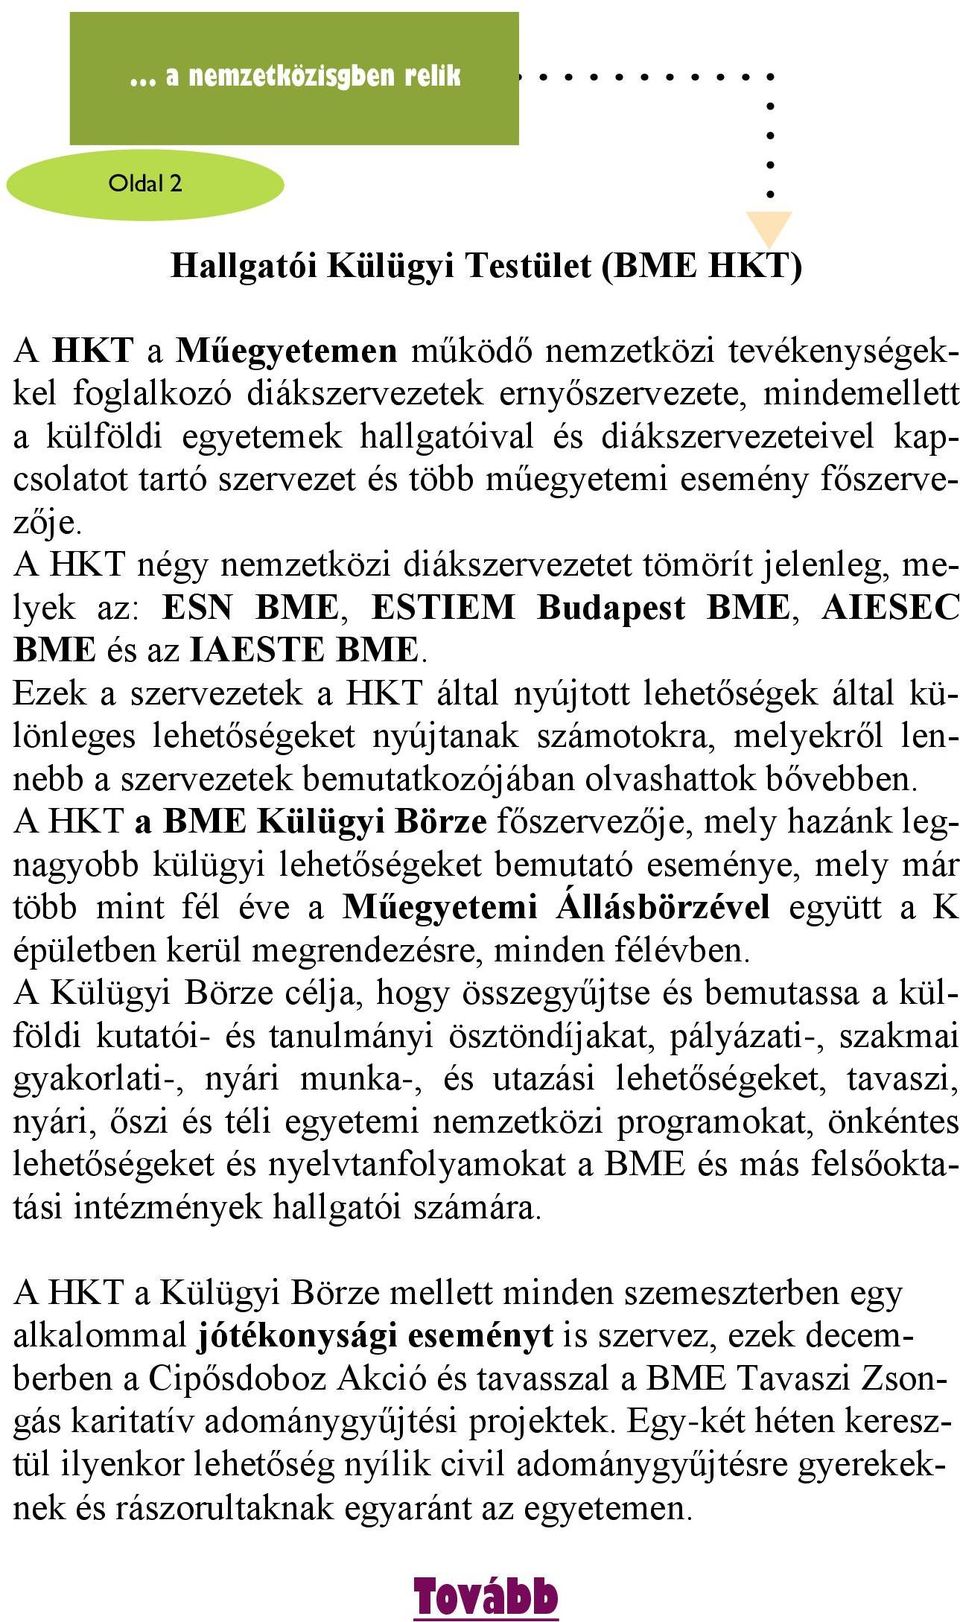 A HKT négy nemzetközi diákszervezetet tömörít jelenleg, melyek az: ESN BME, ESTIEM Budapest BME, AIESEC BME és az IAESTE BME.